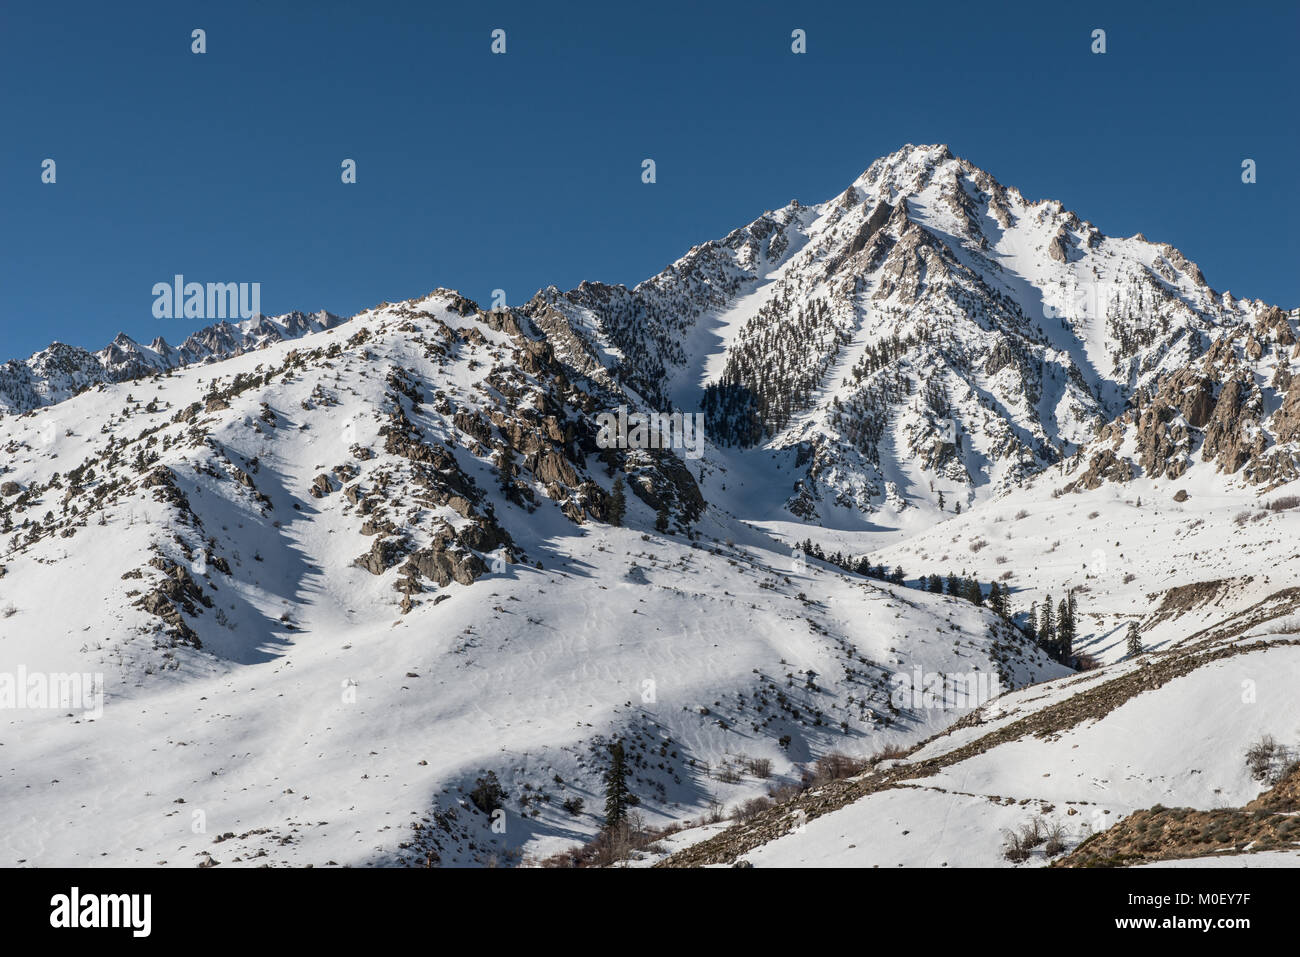 Mount Whitney, Sierra Nevada Mountains, California, United States Stock Photo